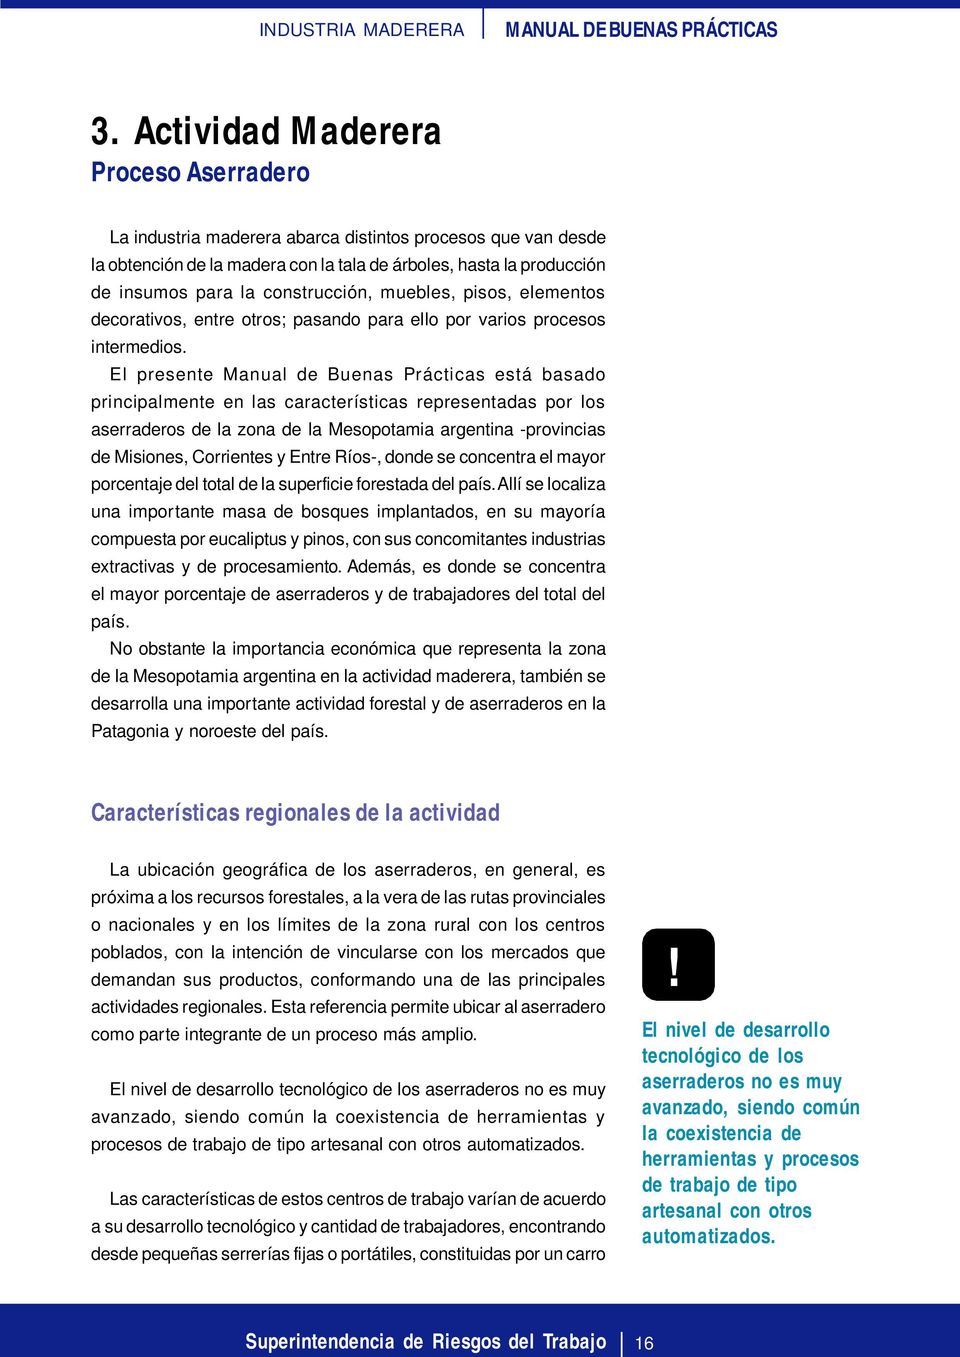 El presente Manual de Buenas Prácticas está basado principalmente en las características representadas por los aserraderos de la zona de la Mesopotamia argentina -provincias de Misiones, Corrientes y